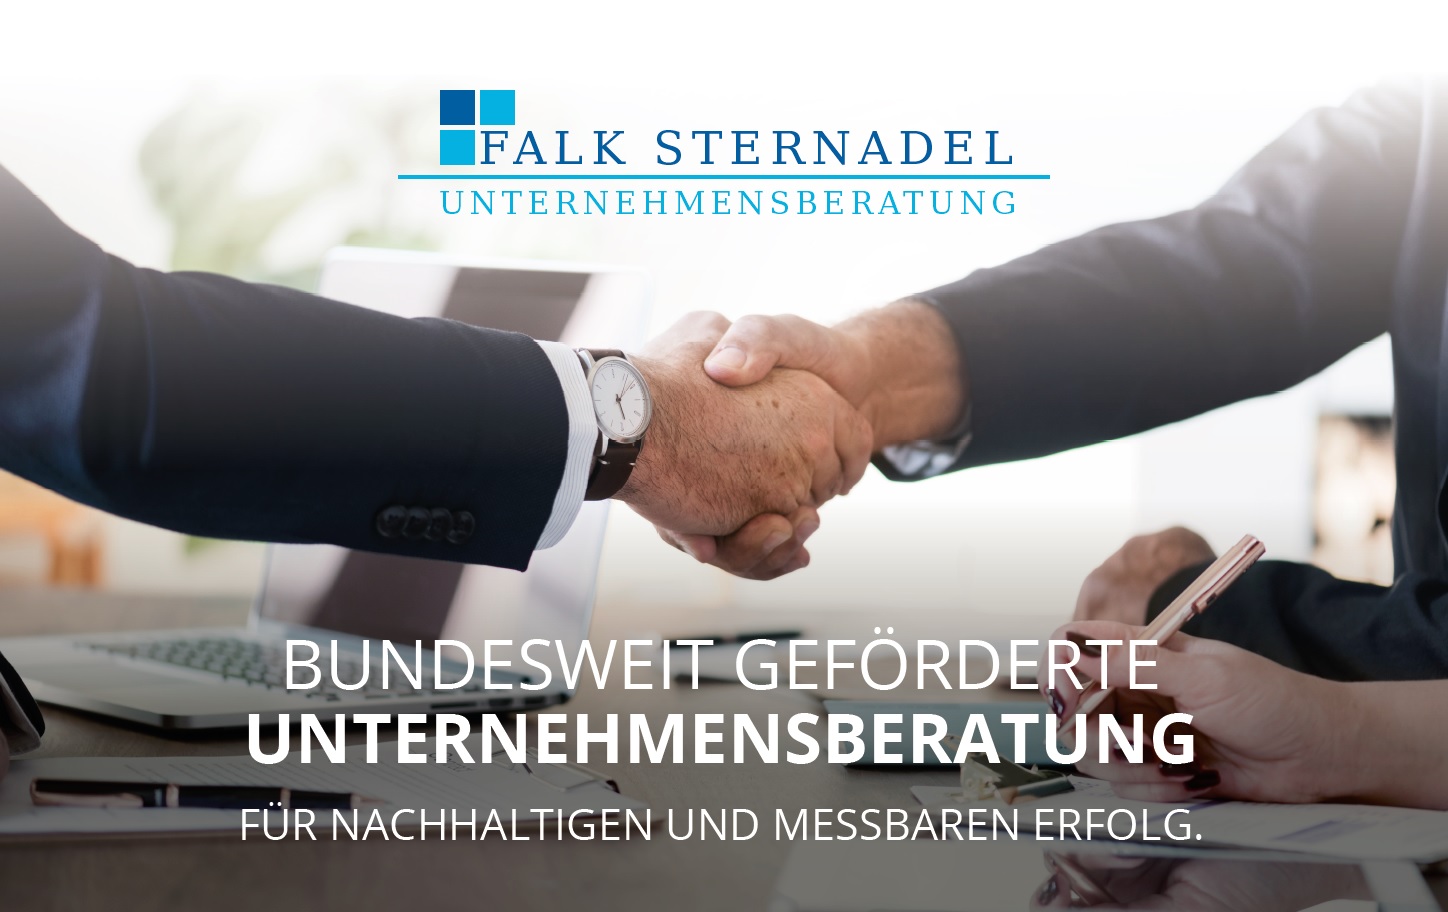 www.businessstern.de